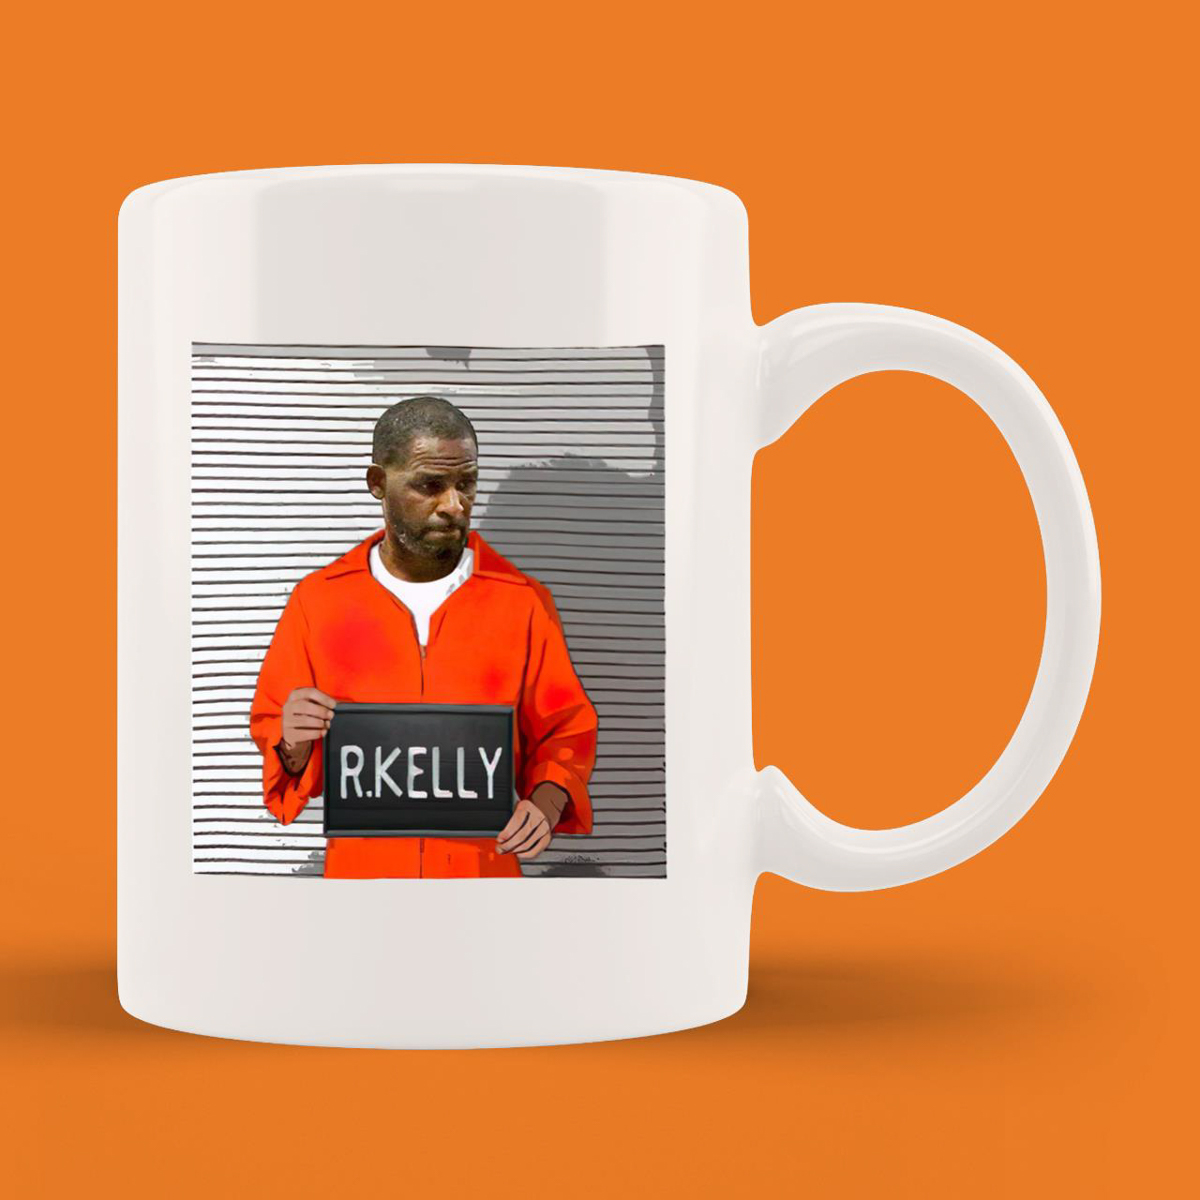 R Kelly Mug Shot